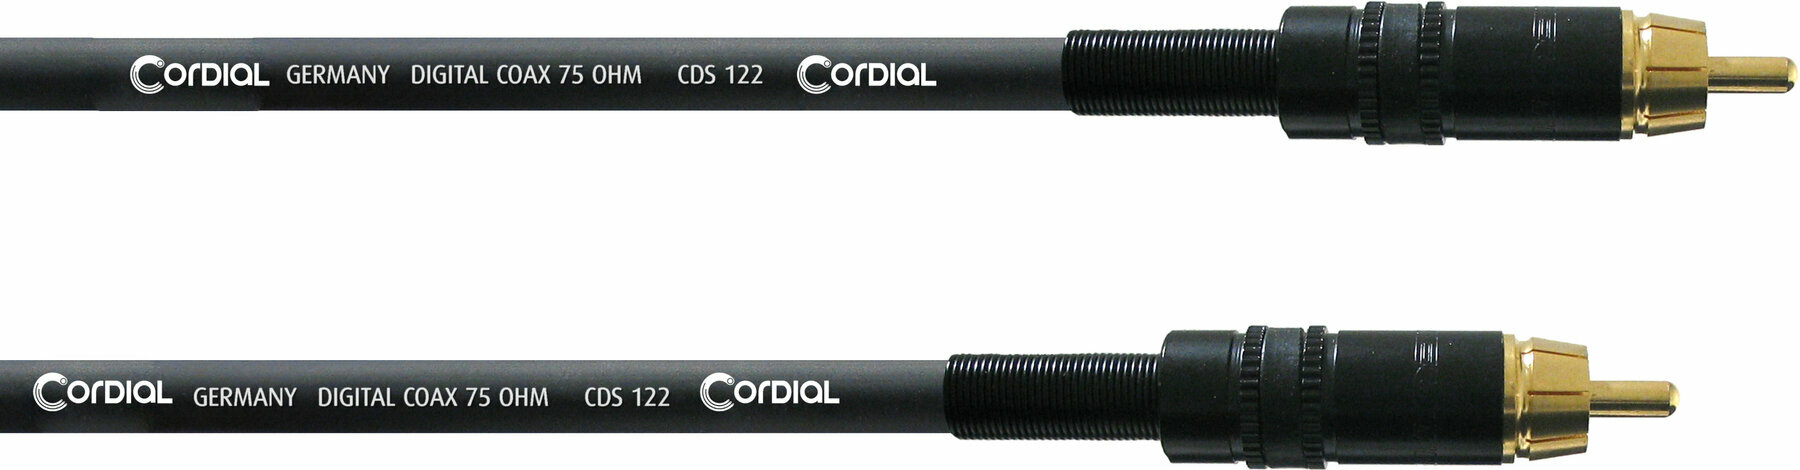 Cable de audio Cordial CPDS 3 CC 3 m Cable de audio